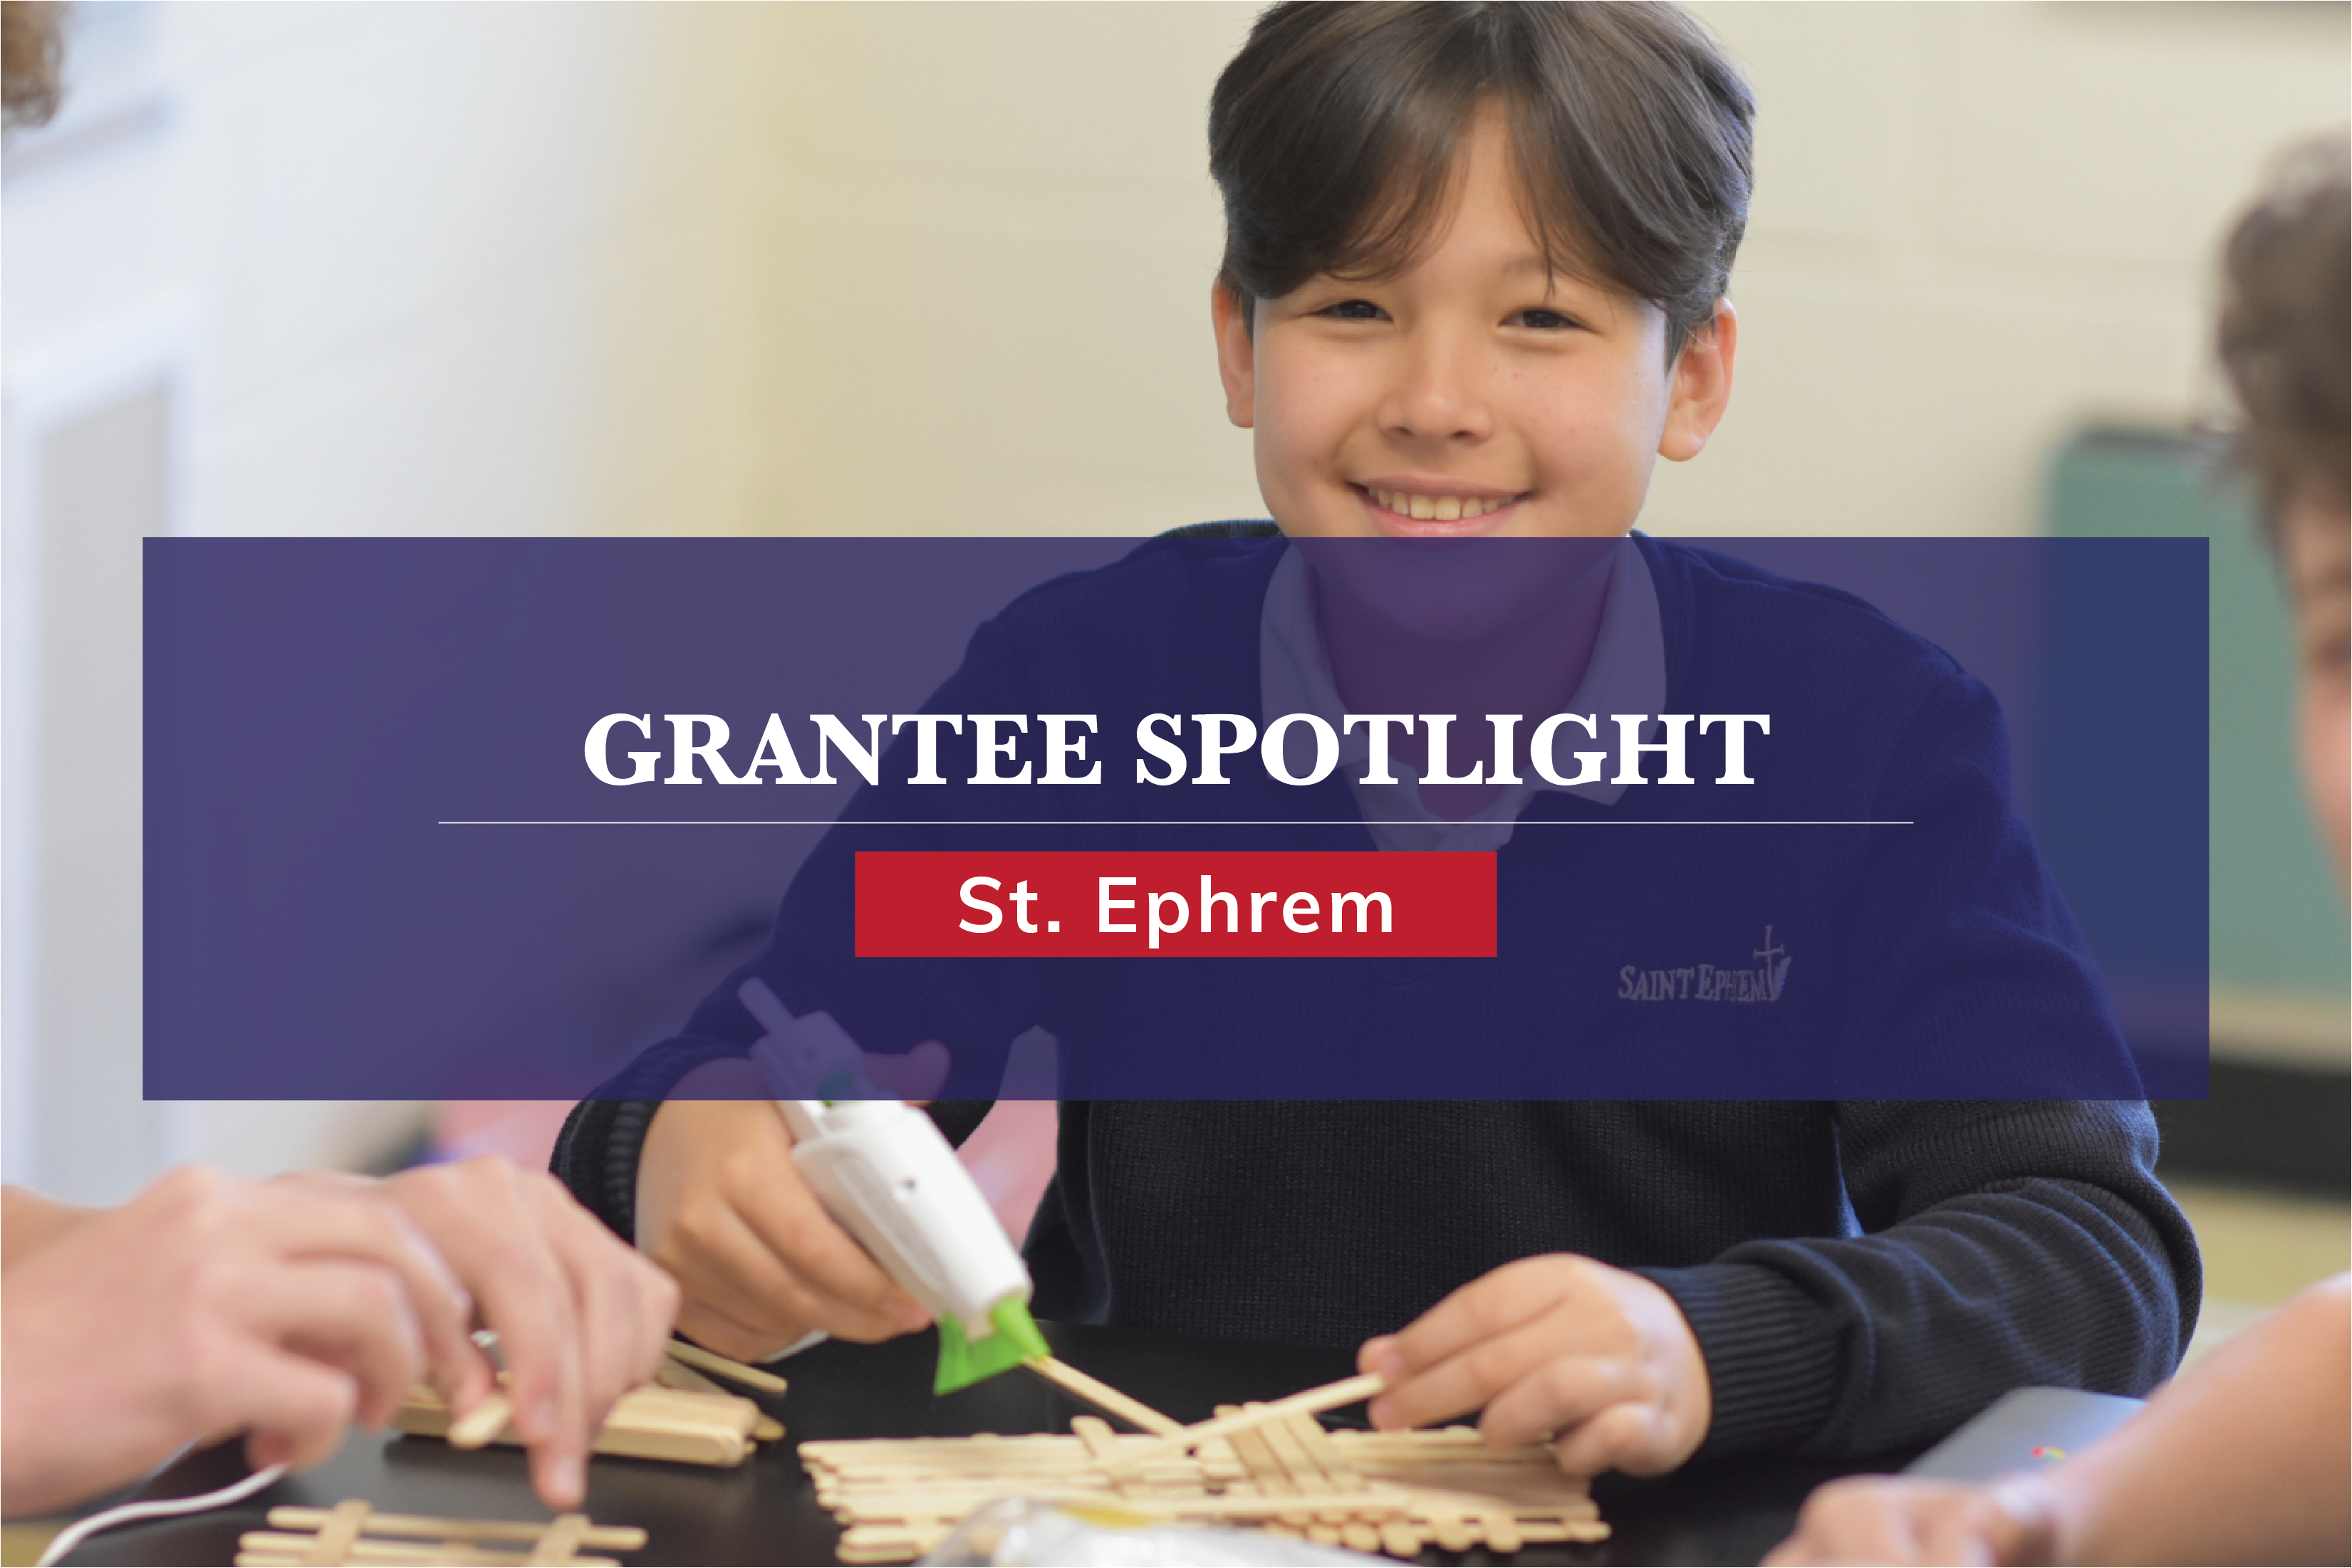 Grantee Spotlight - Ephrem